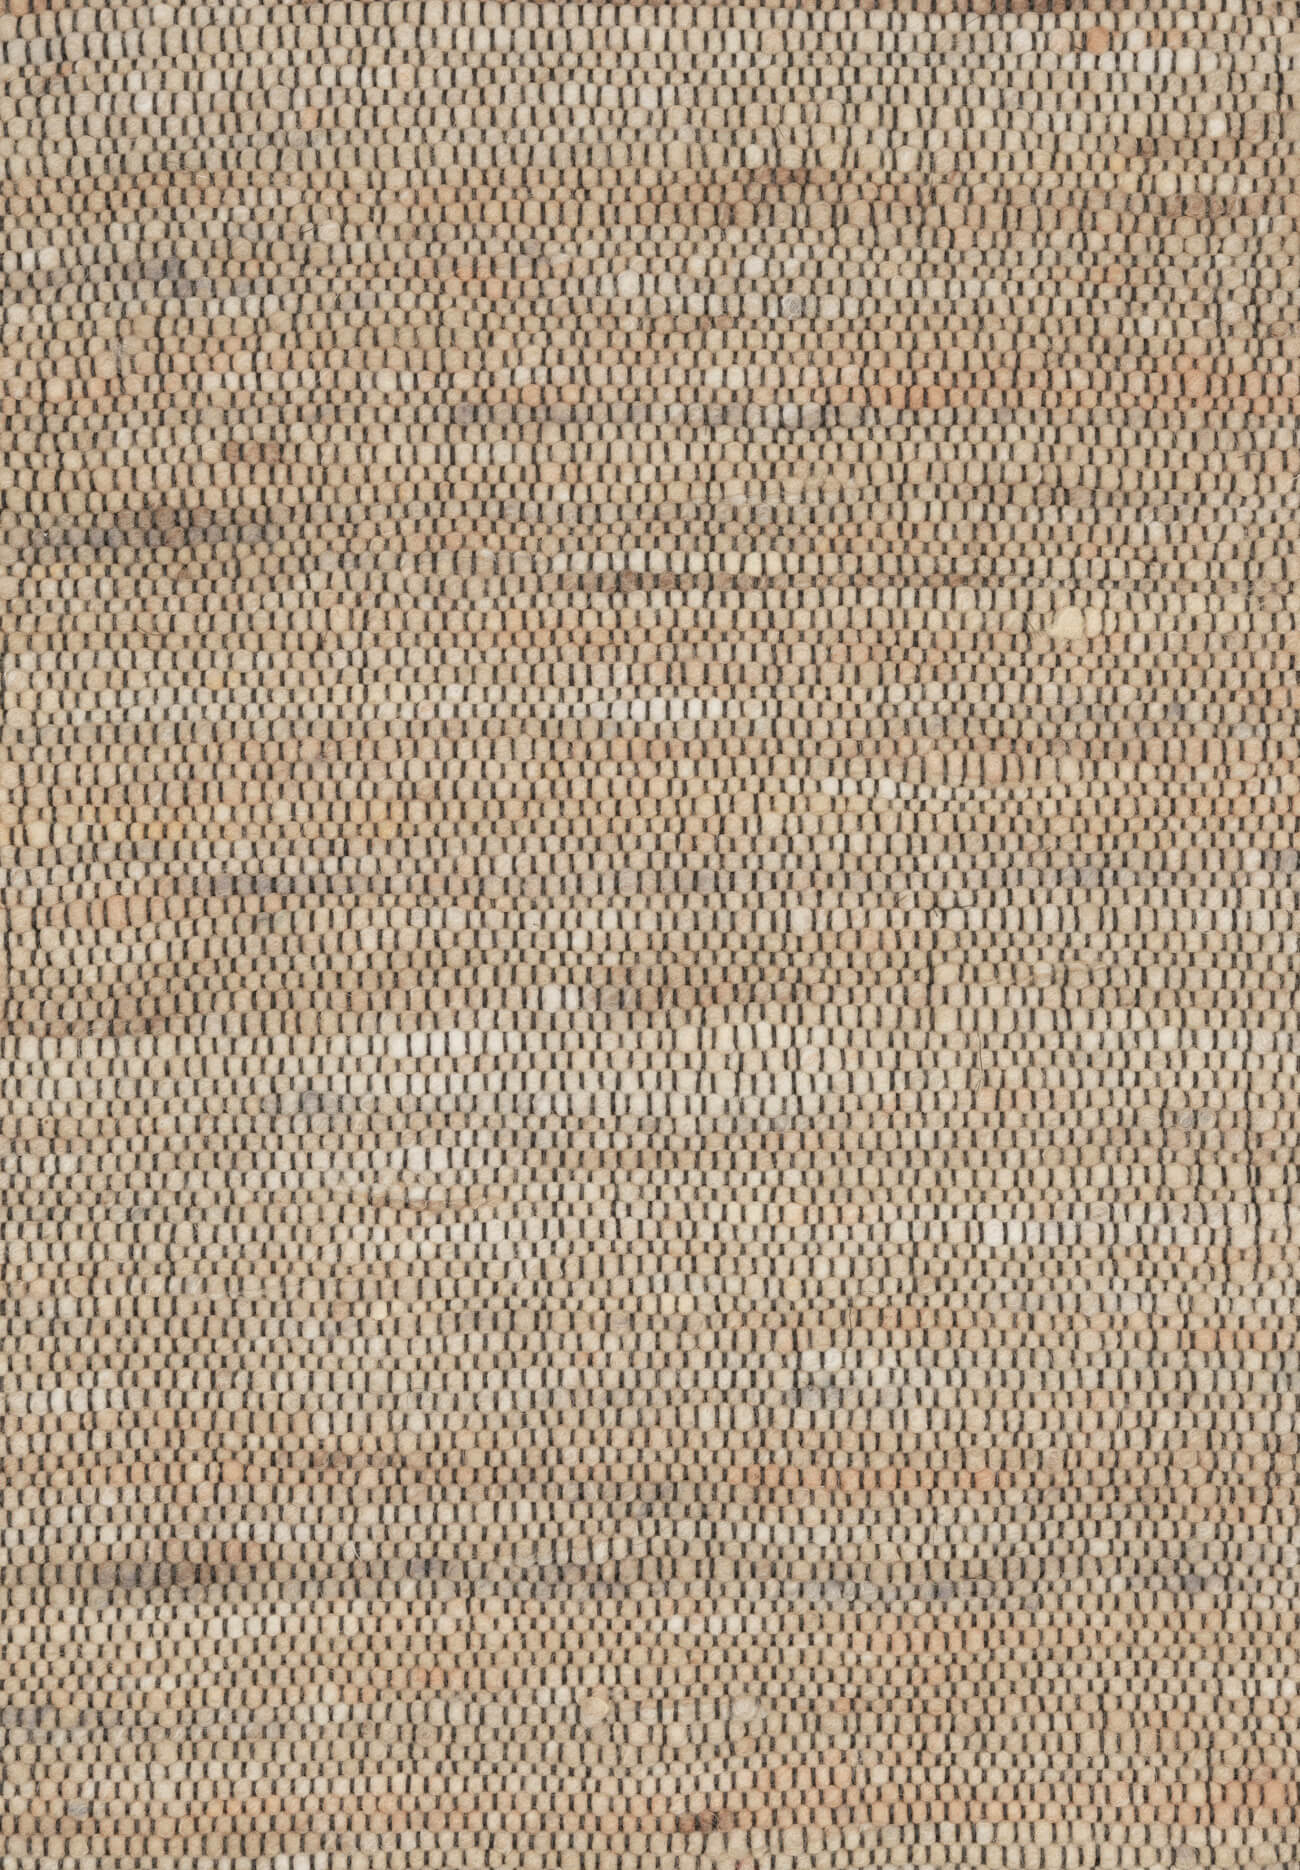 Handwebteppich Beat Moda, Paulig since 1750, Farbe 124, Draufsicht